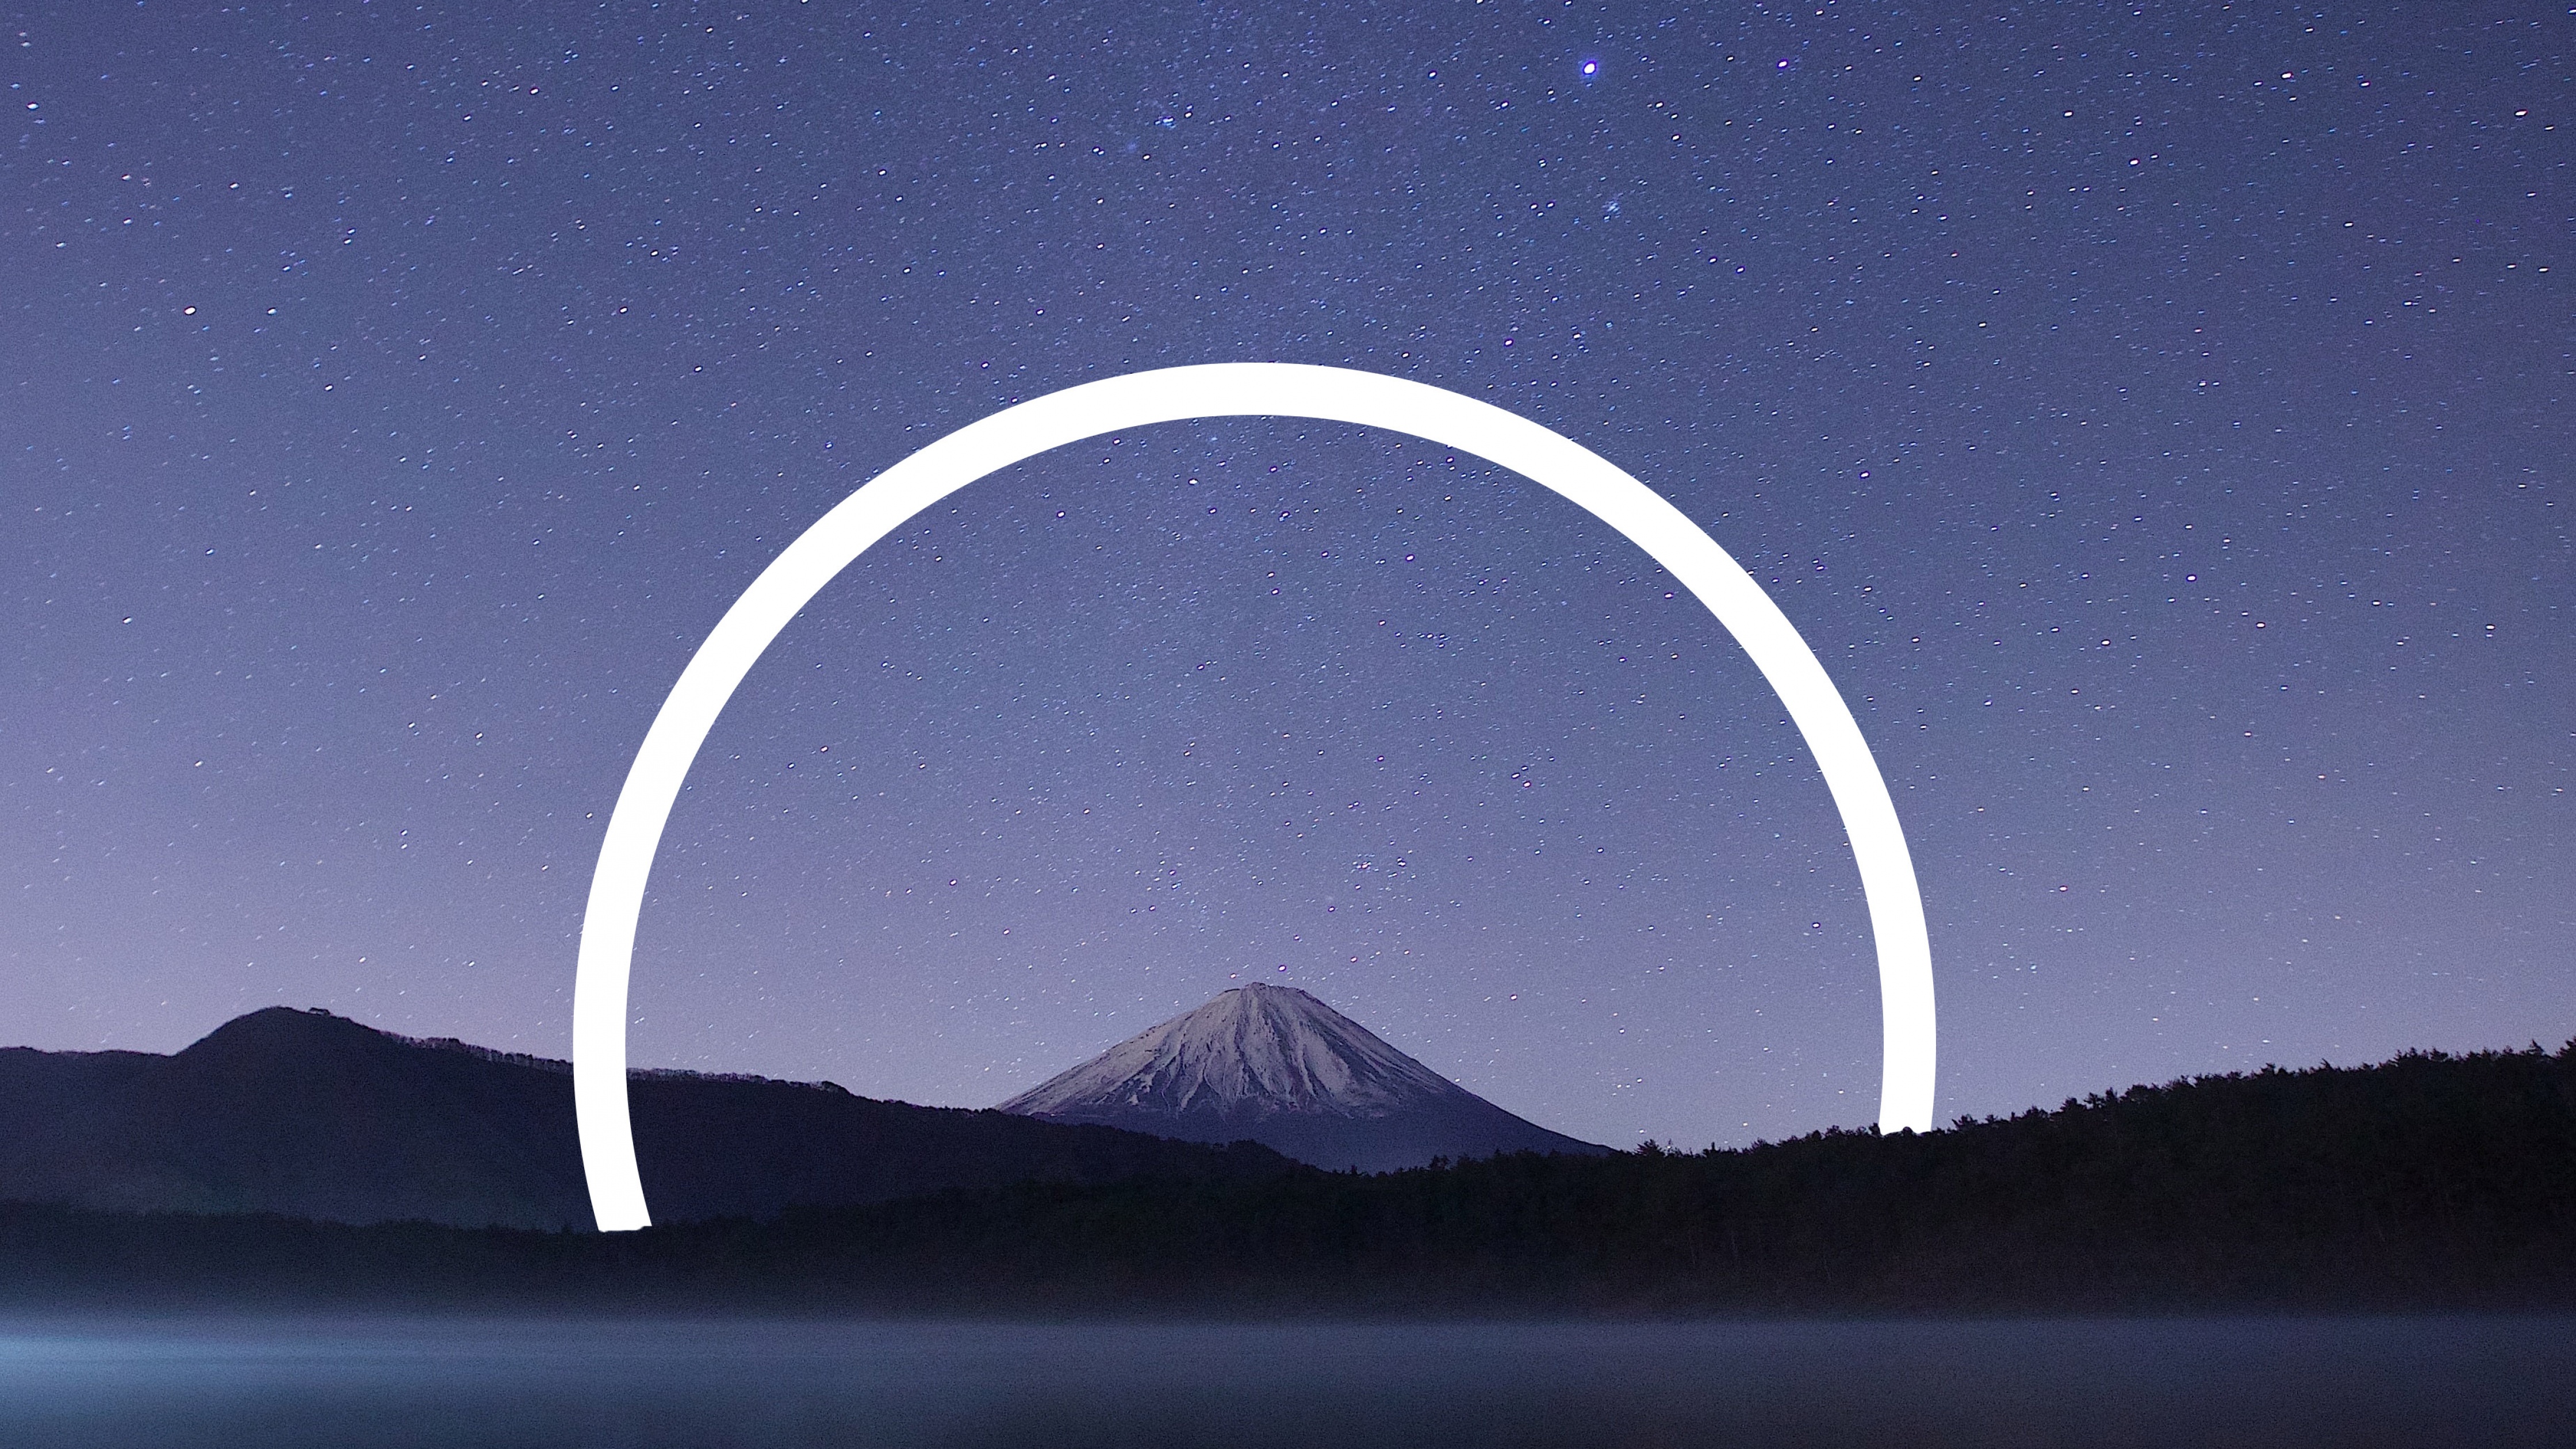 Mount Fuji Wallpapers - Top Free Mount Fuji Backgrounds - WallpaperAccess